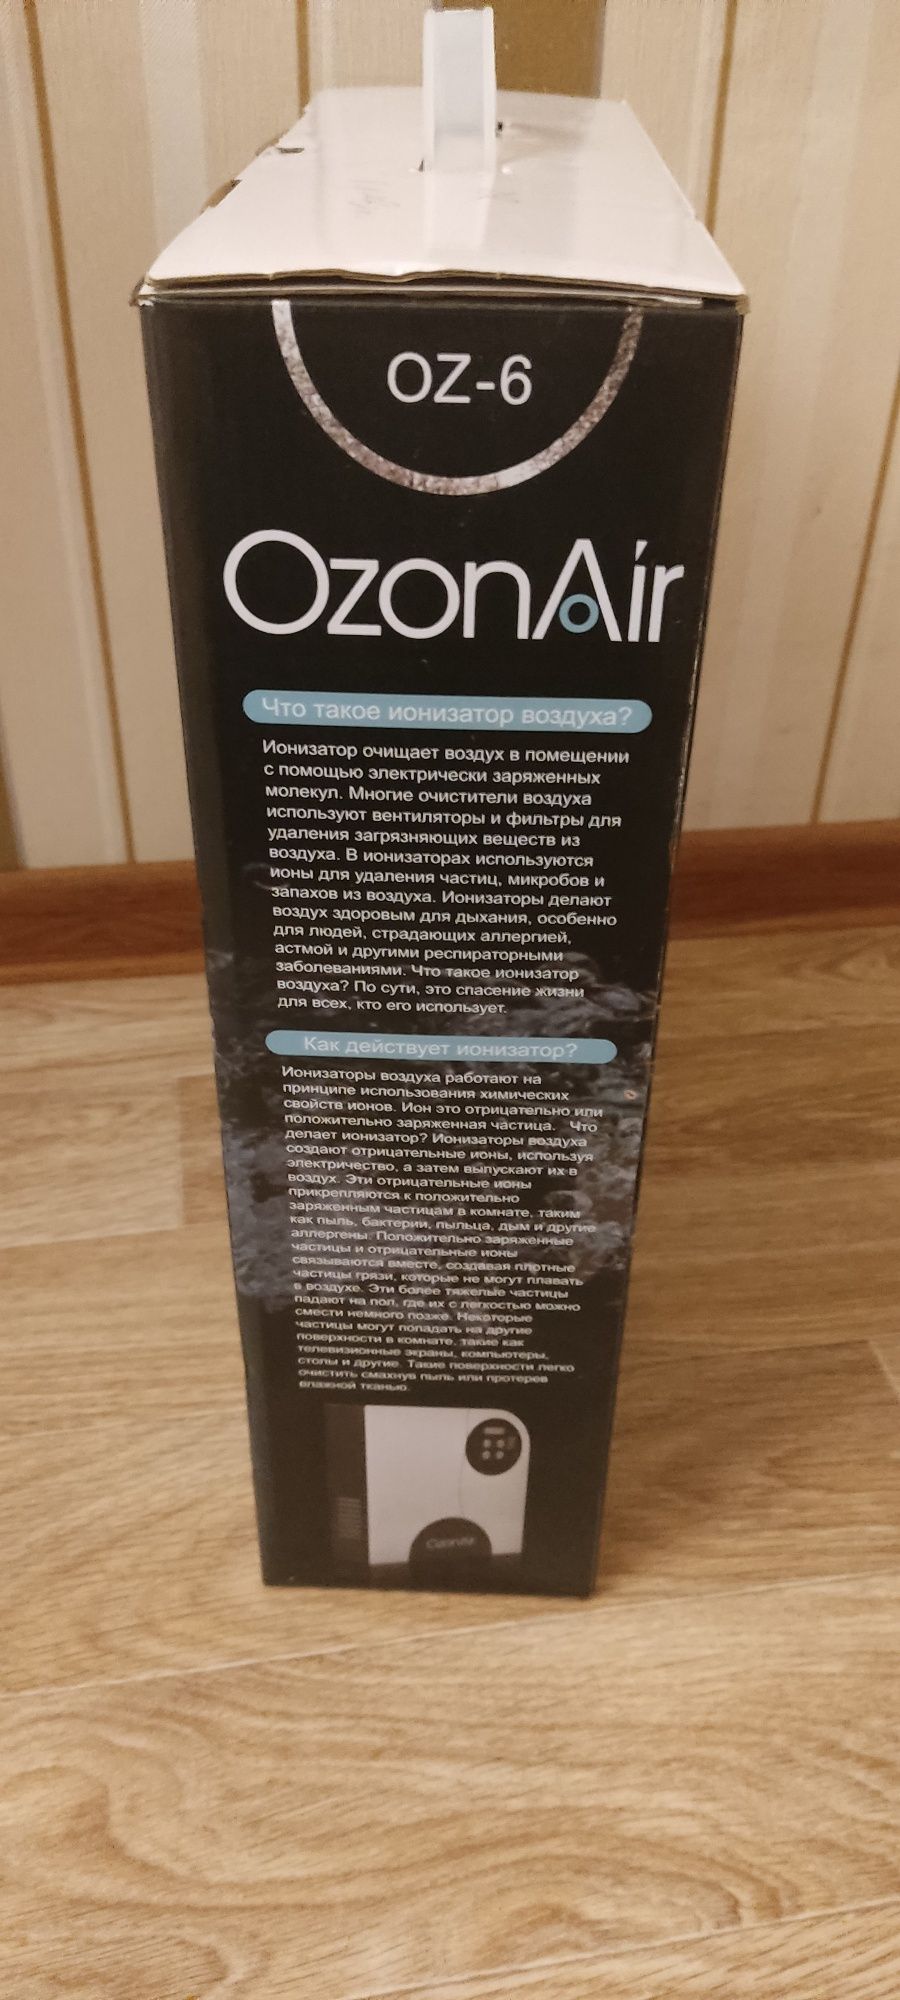 Аллергетикам.Озонатор "ОzonAir Oz-6"